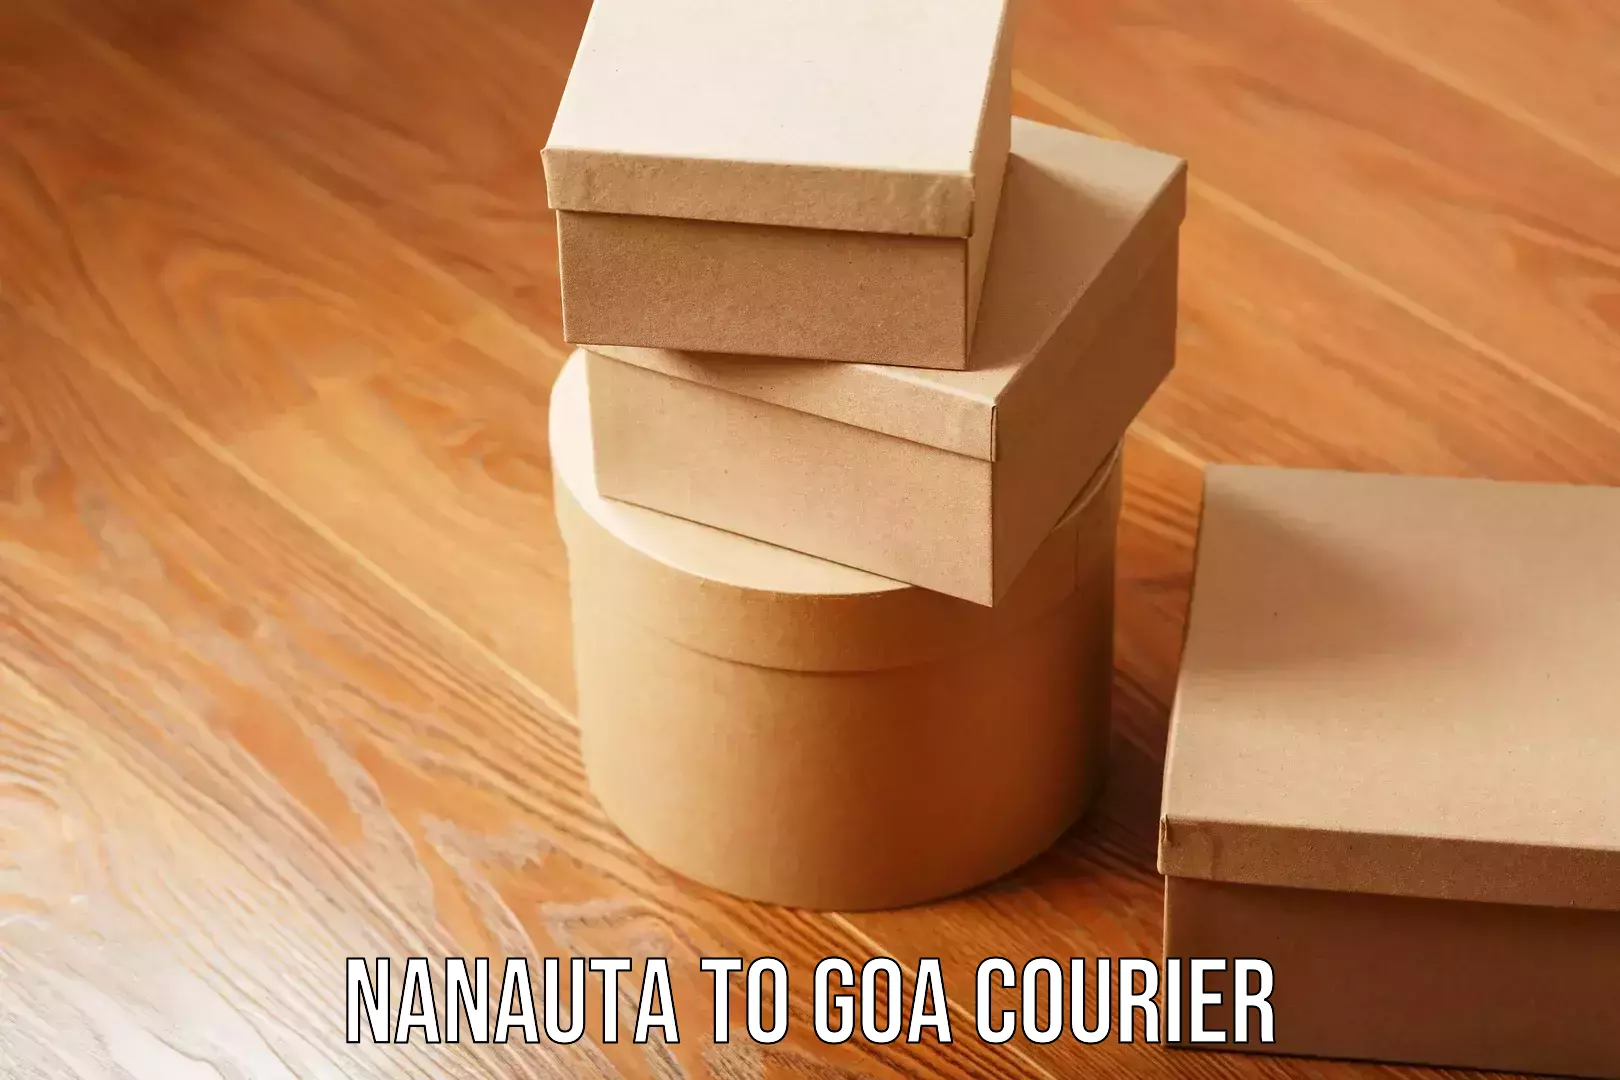 Reliable furniture movers Nanauta to Goa